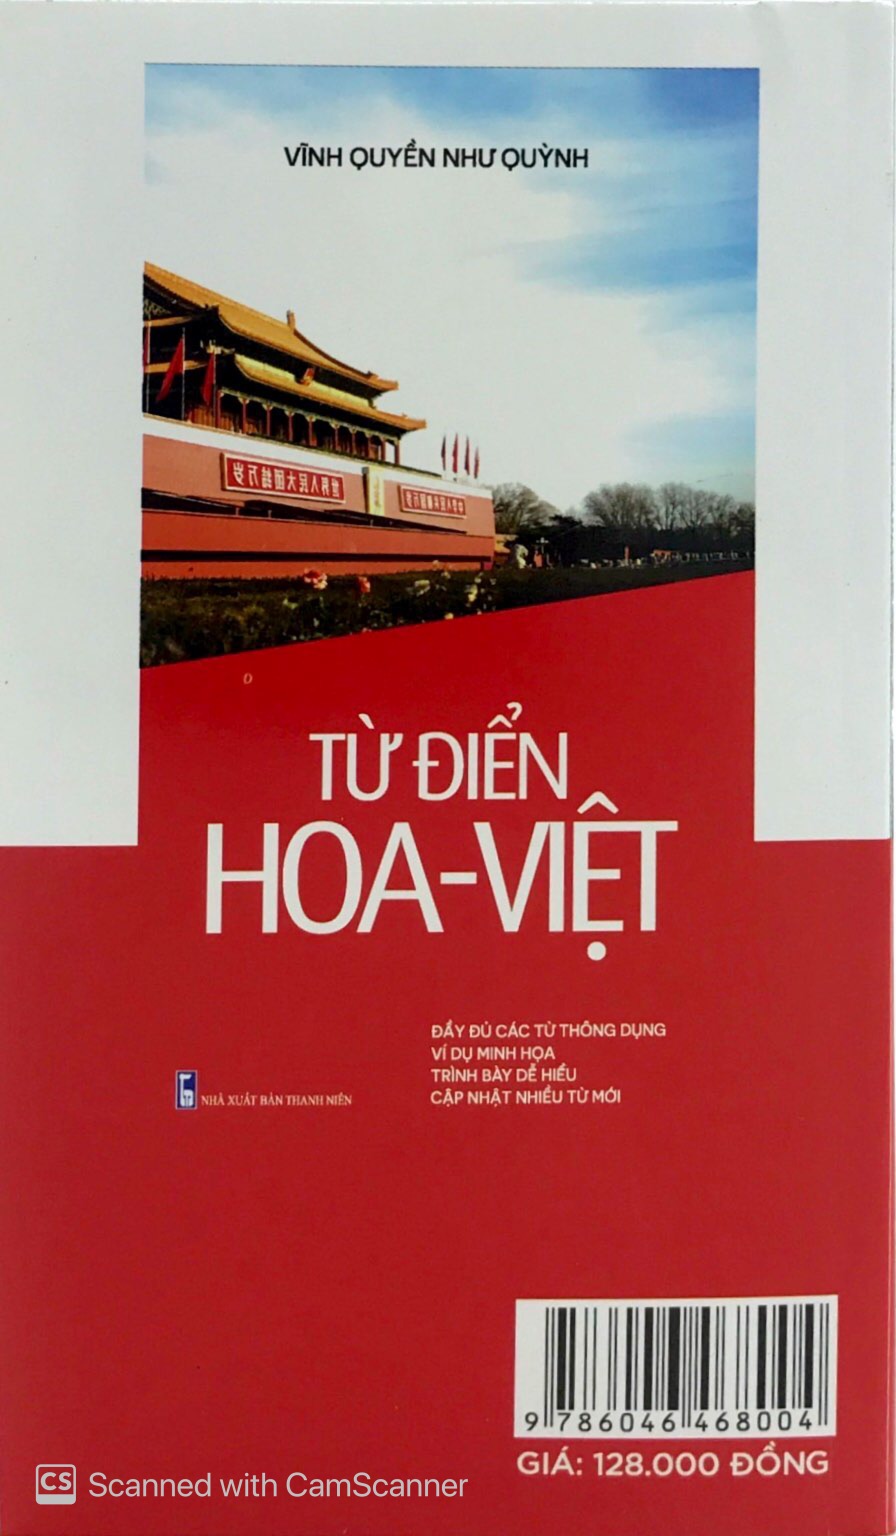 Từ Điển Hoa Việt - Việt Hoa PDF